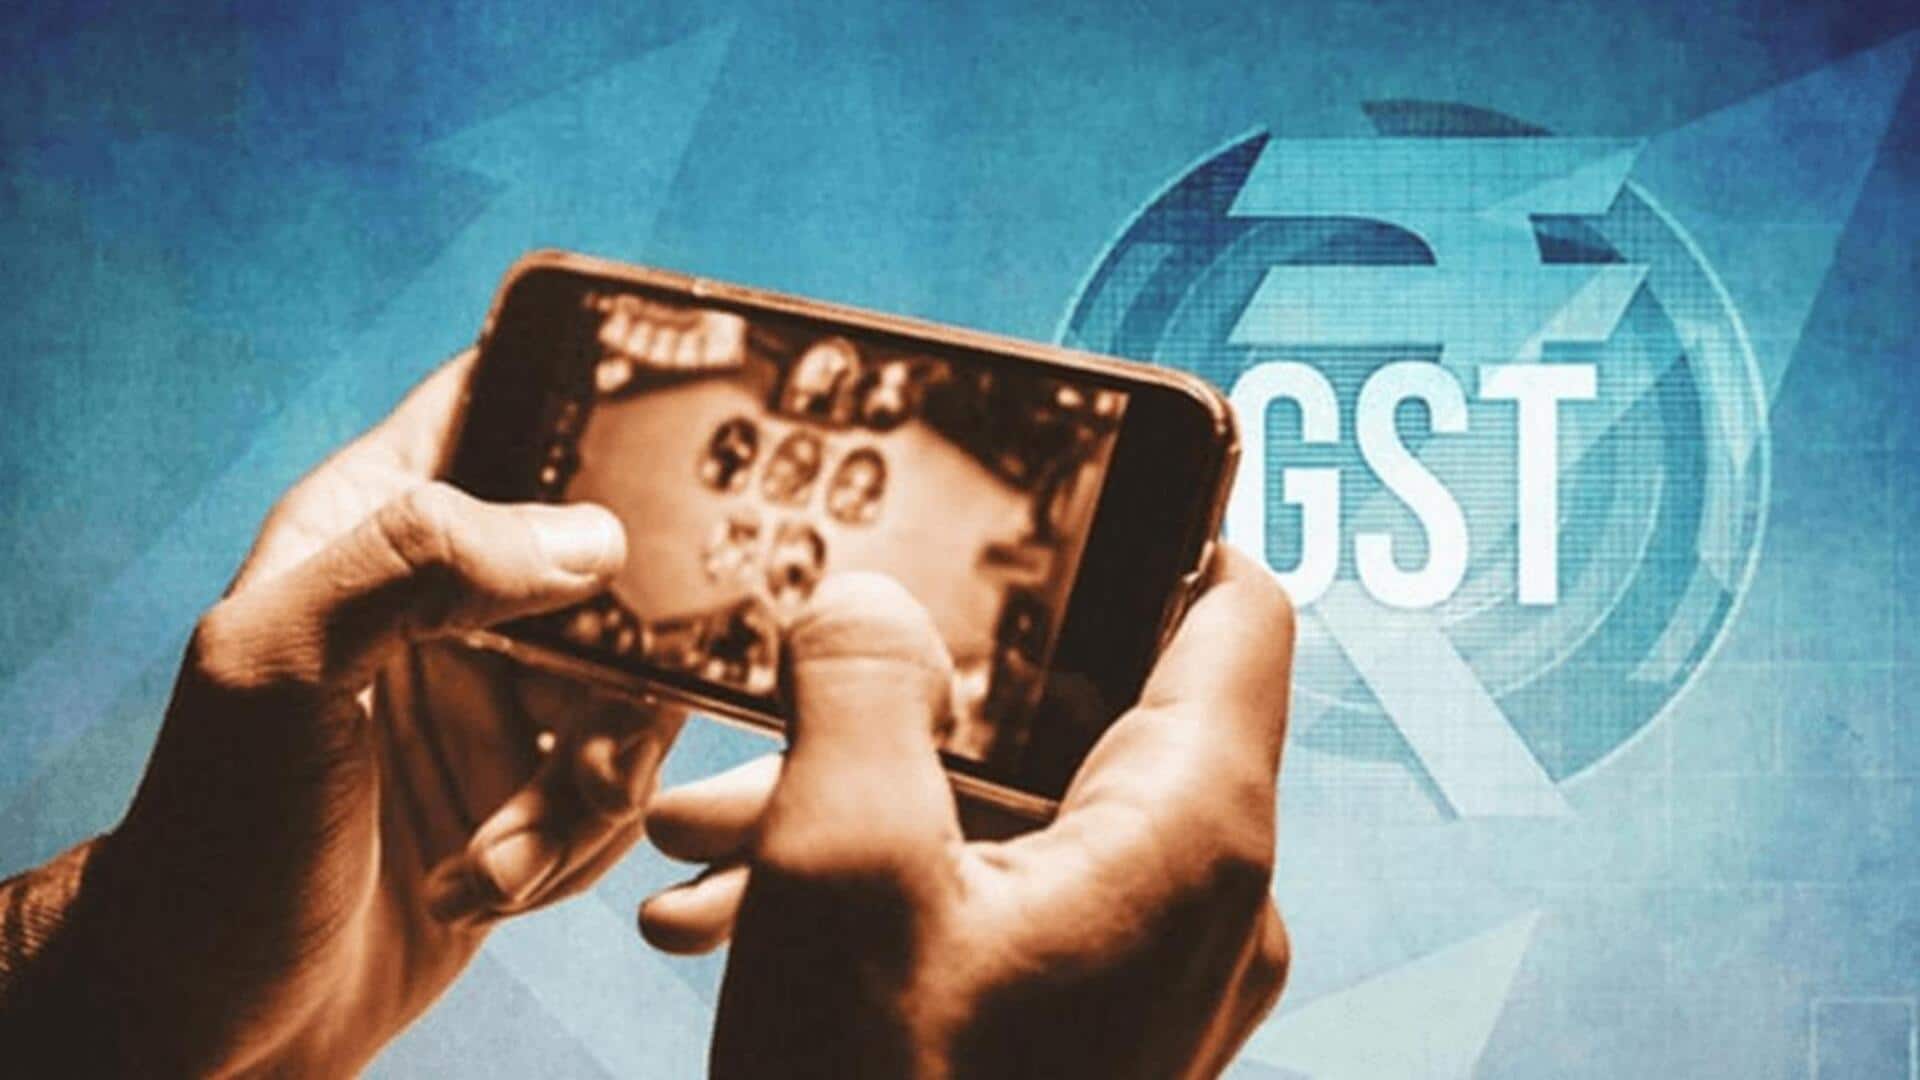 ऑनलाइन गेमिंग पर GST को लेकर विवाद, केंद्र सरकार ने कहा- शुरू से लागू है नियम